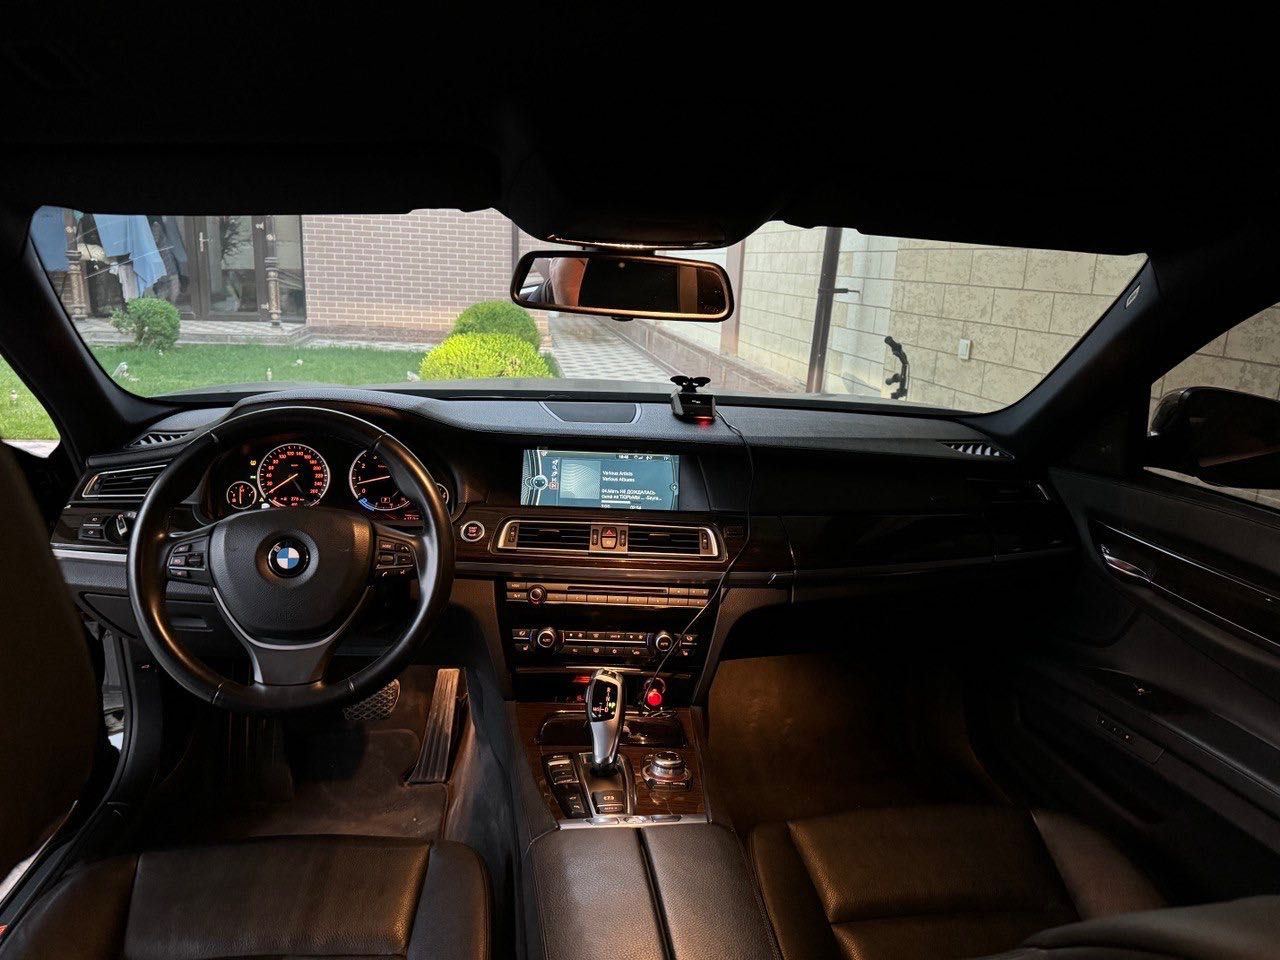 BMW 740i год 2012. пробег 82000. очень хорошее состояние